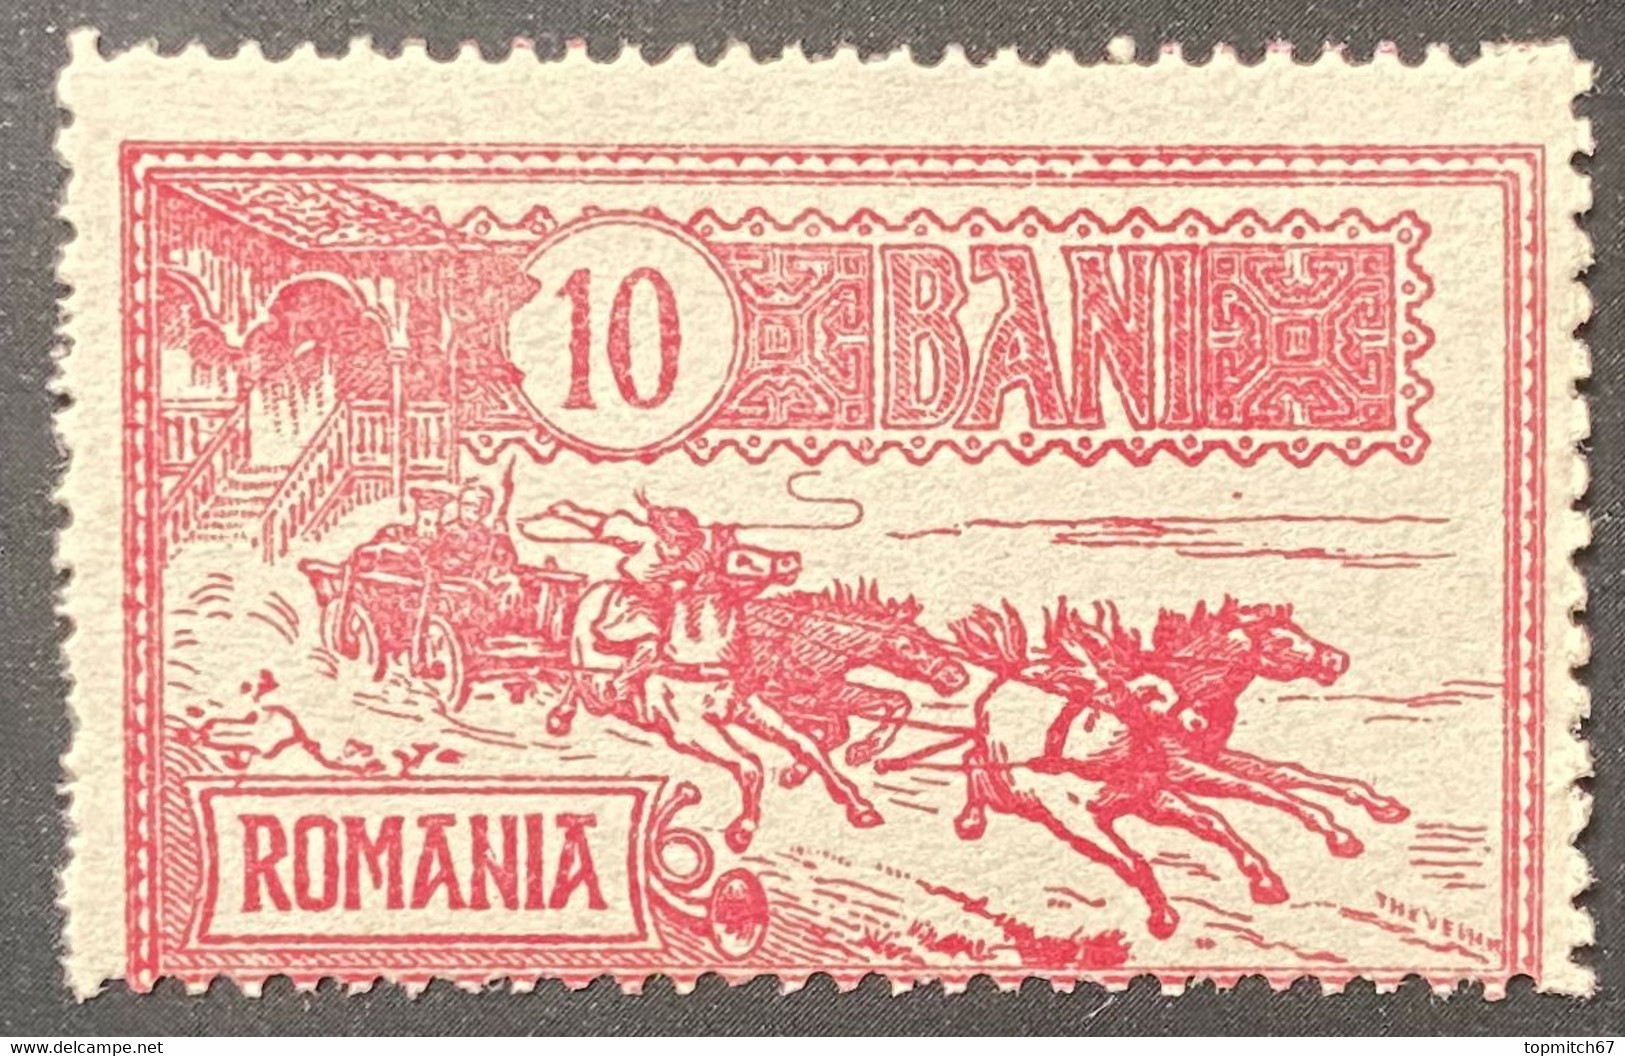 ROM0140MNH - Mail Coach - 10 Bani MNH Stamp - Romania - 1903 - Nuovi